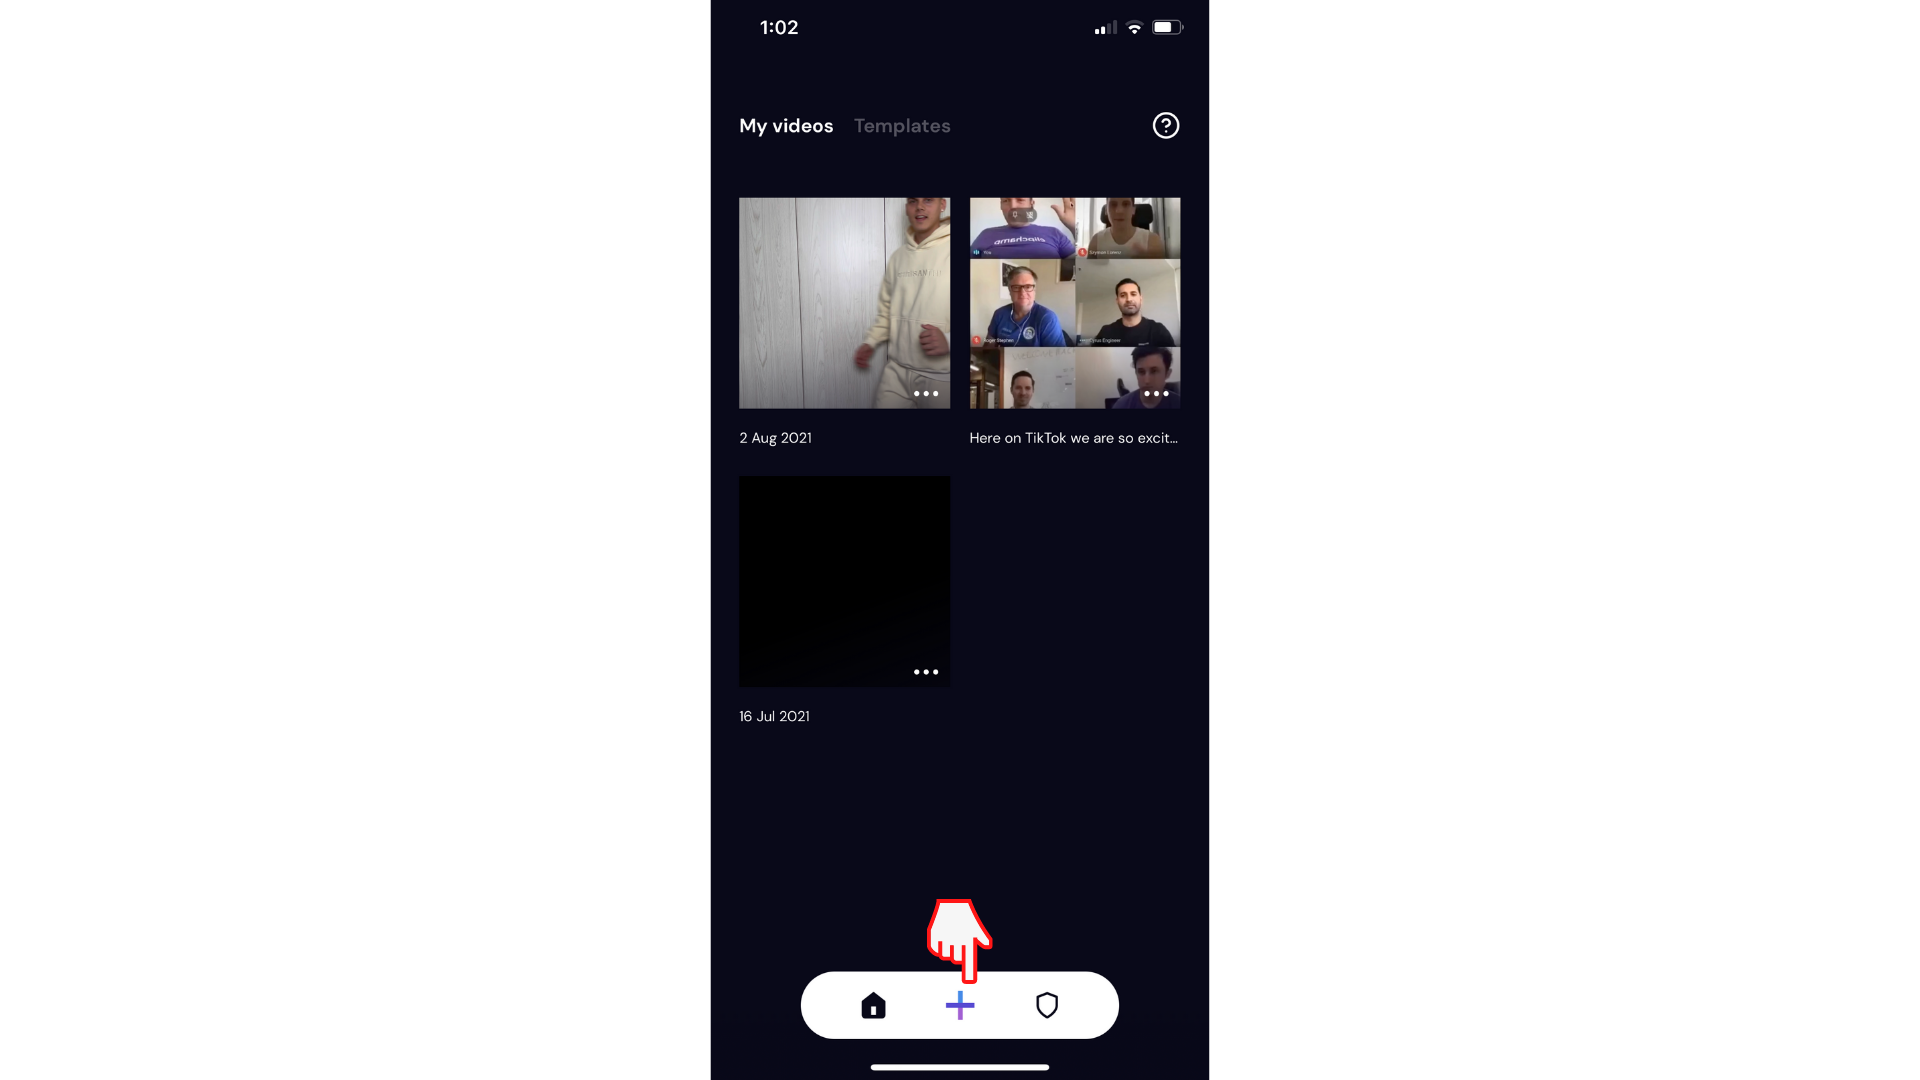 Pengguna membuat video baru di aplikasi Clipchamp iOS dengan mengklik tombol plus